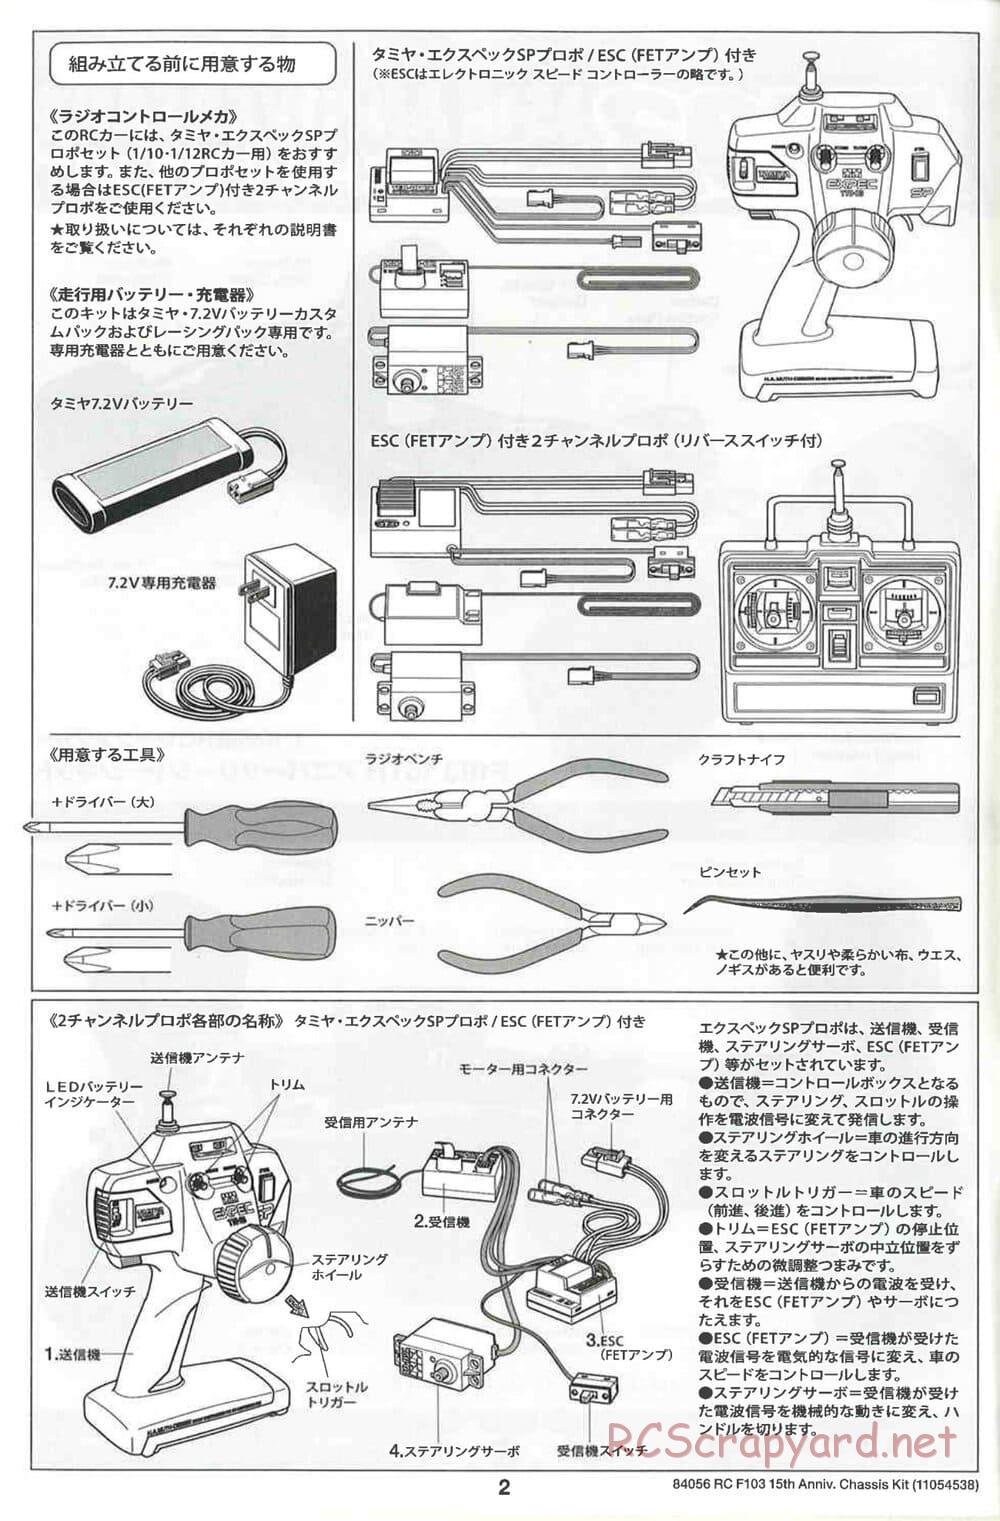 Tamiya - F103 15th Anniversary Chassis - Manual - Page 2